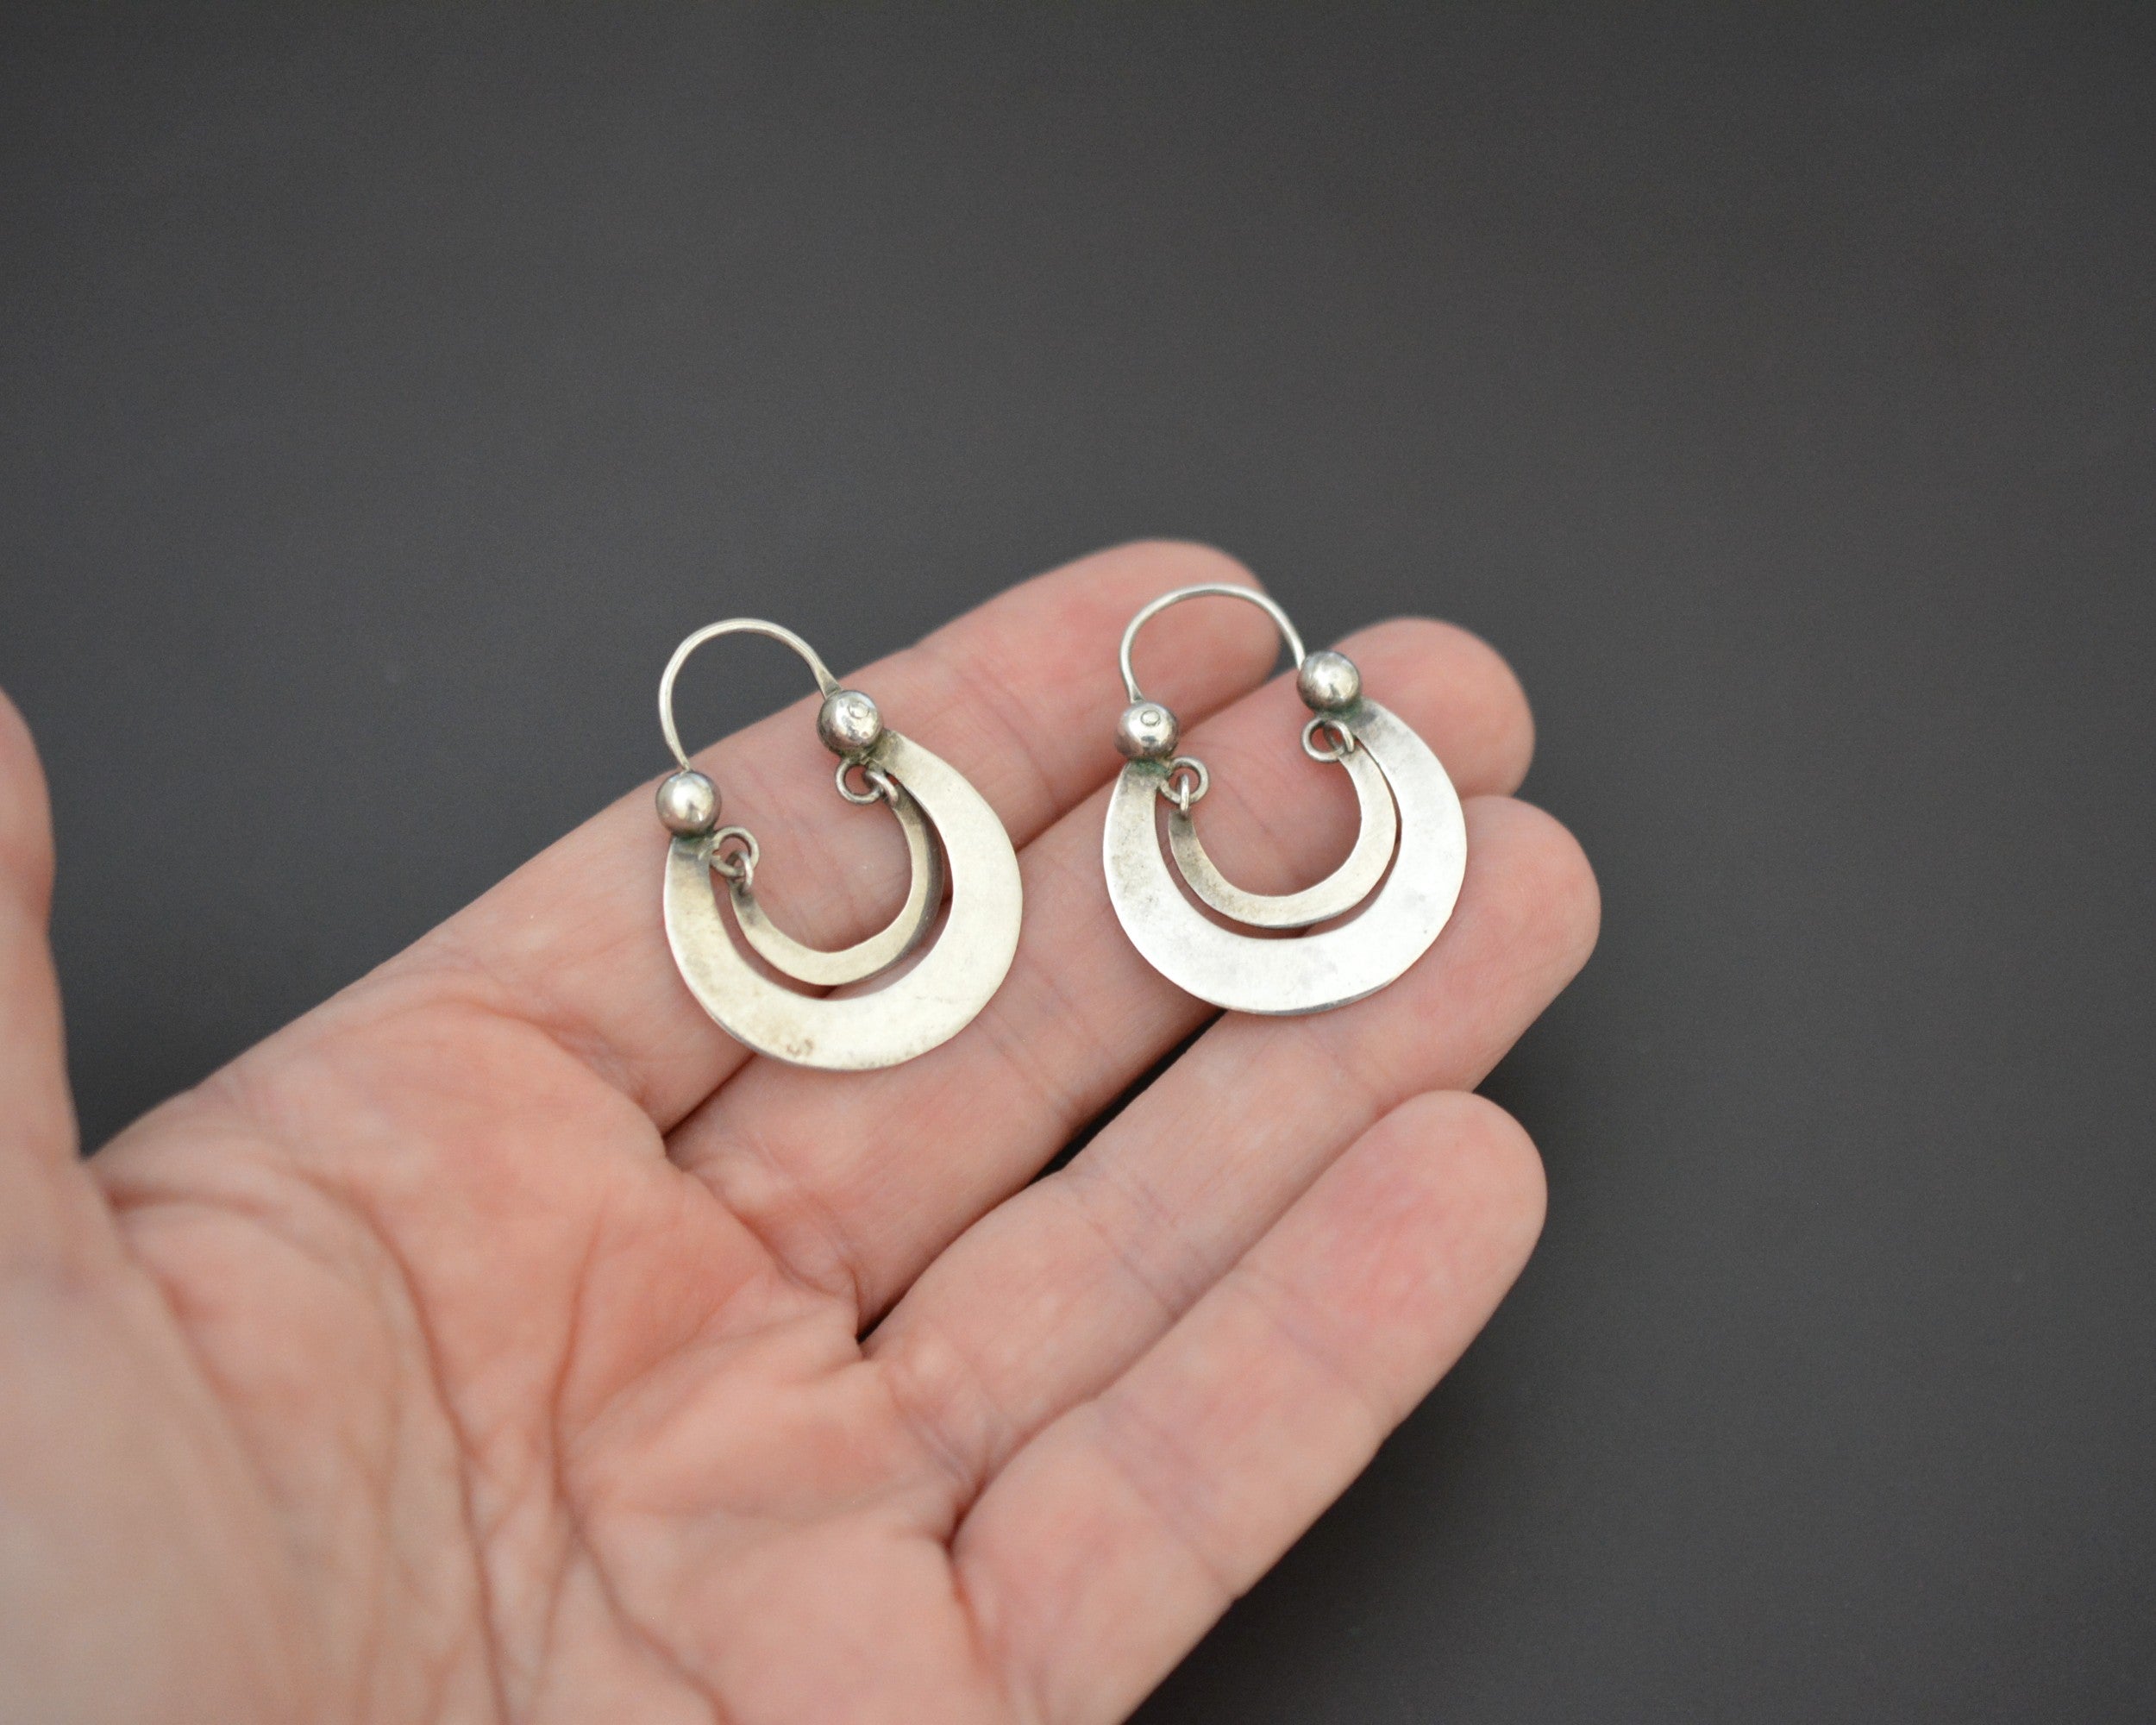 Guatemalan Silver Hoop Earrings - Small Size